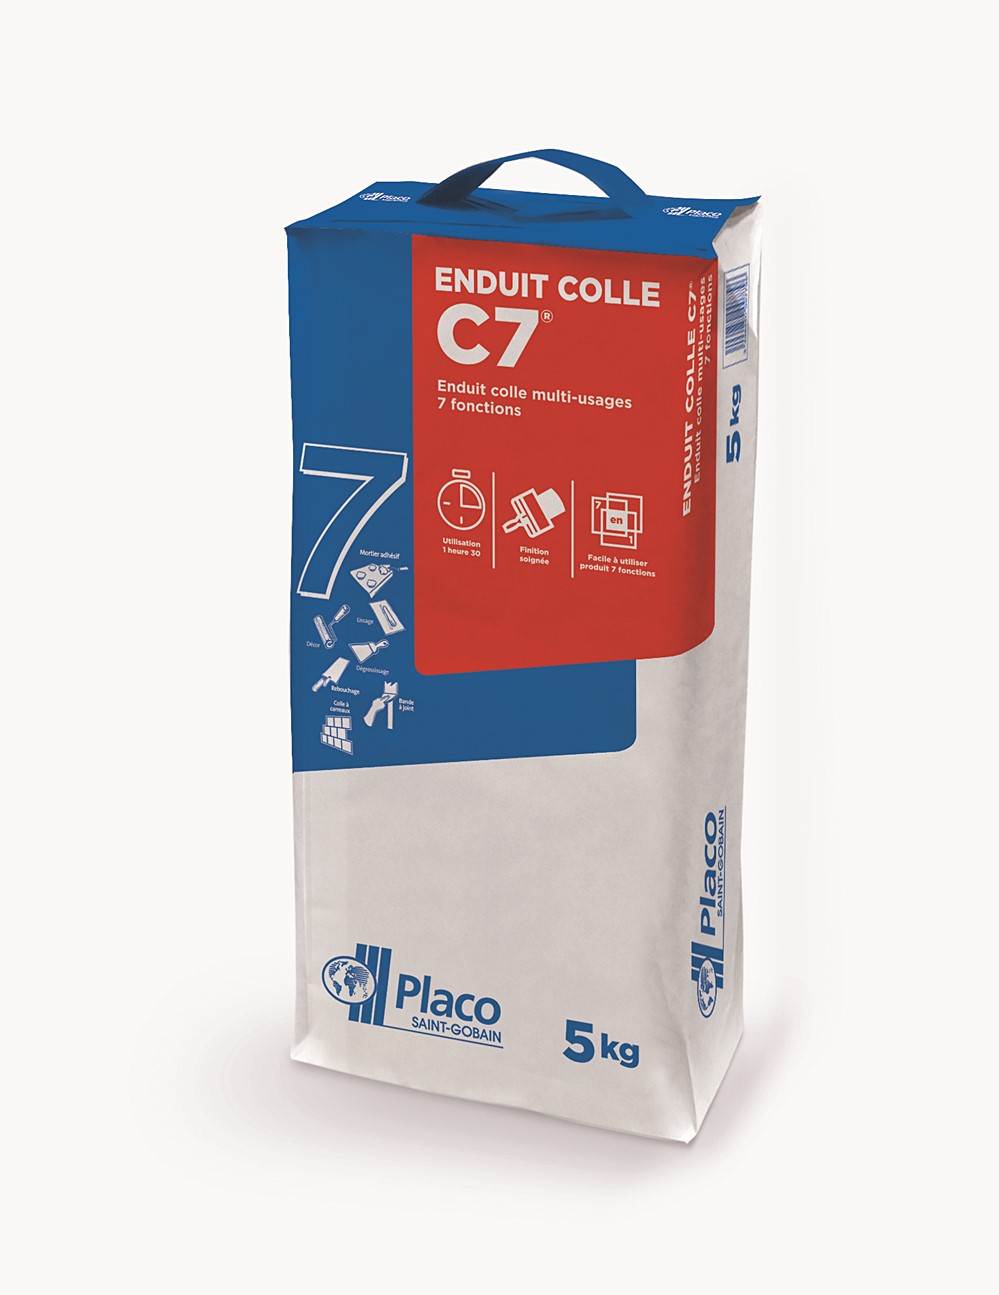 Enduit Colle C7 multi-usage 15kg - PLACO®